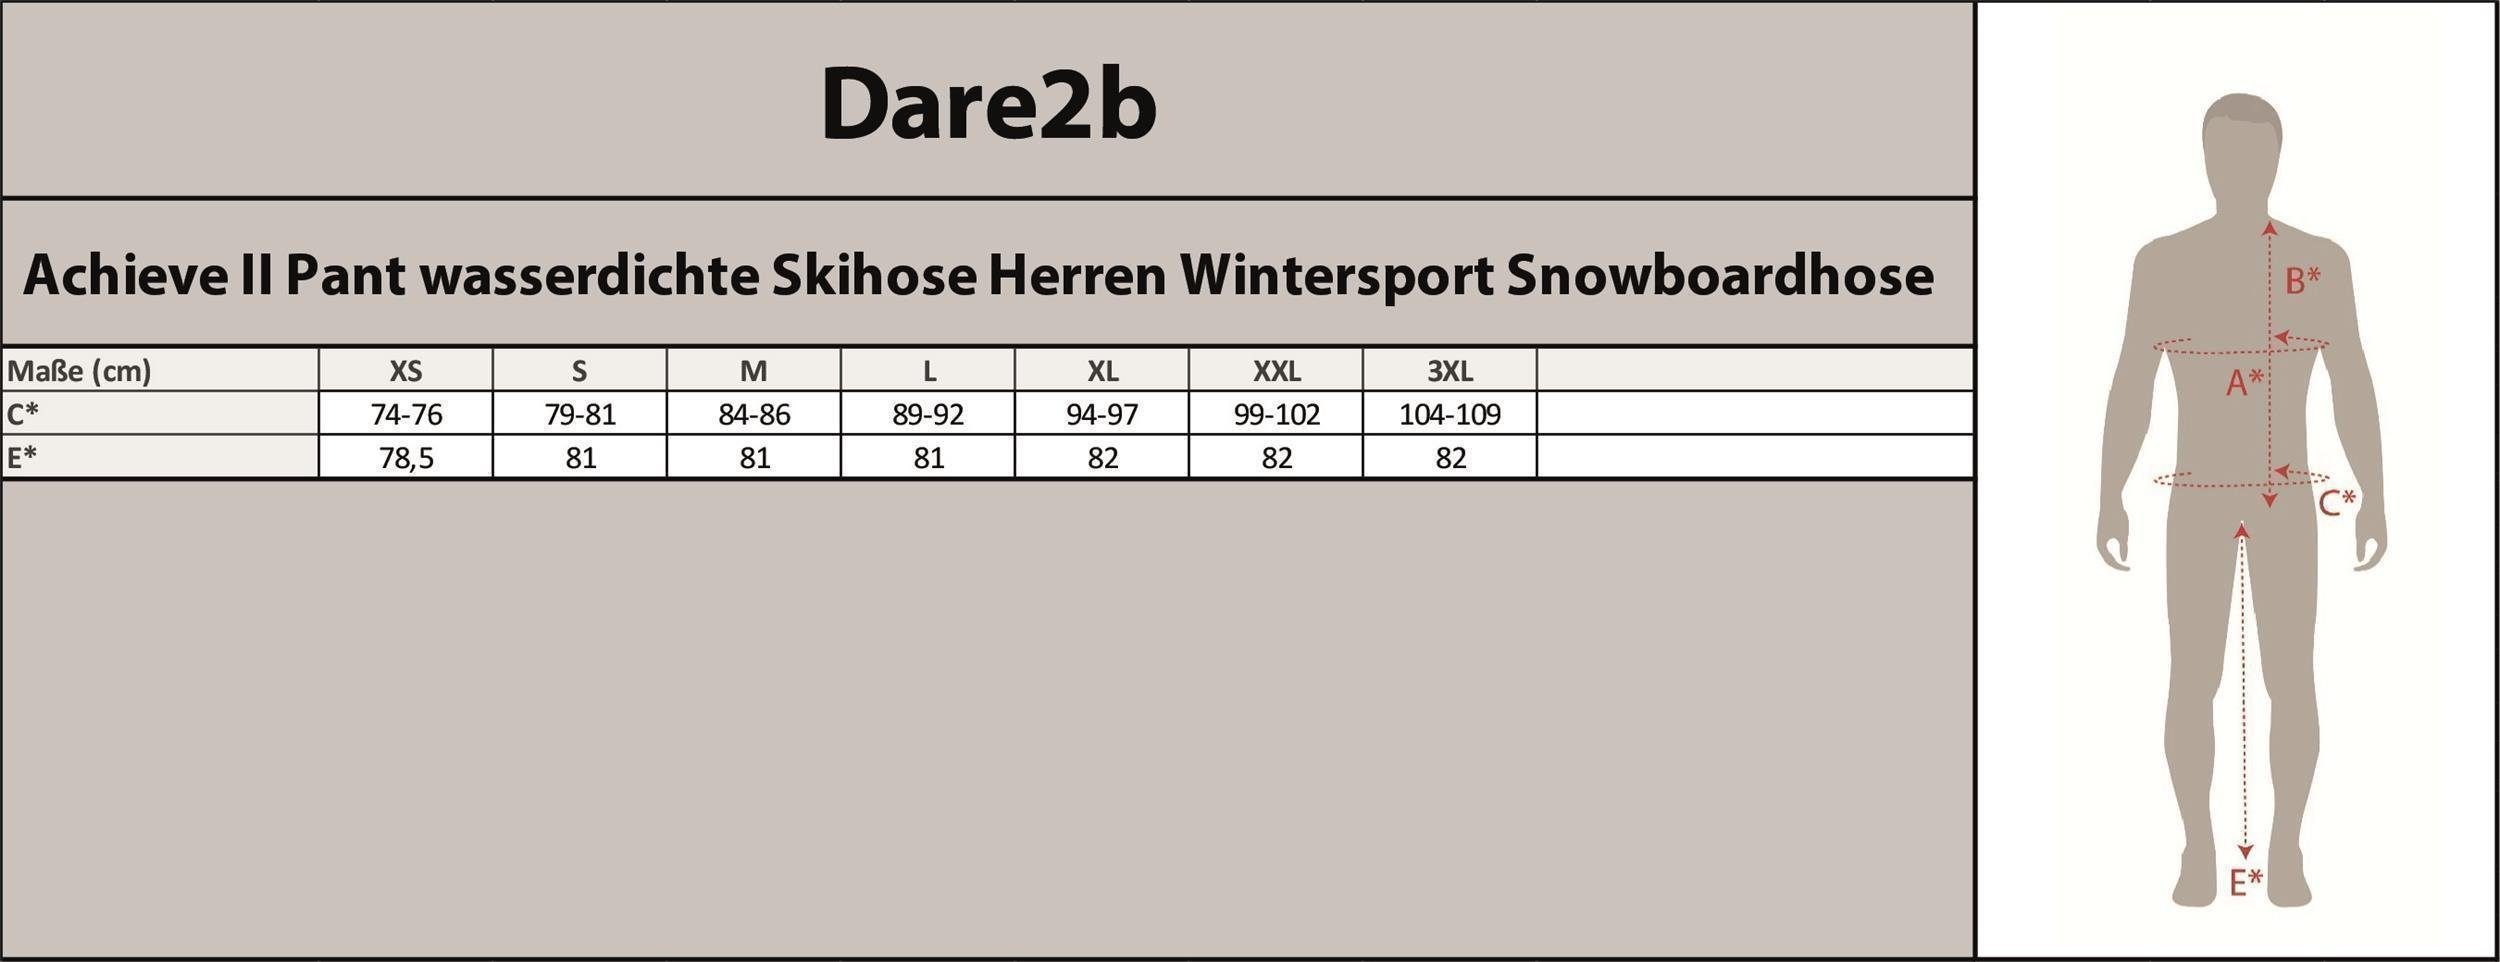 Dare2b Skihose Achieve ii für Herren, Rodeln Snowboarden, Infrared wasserdicht